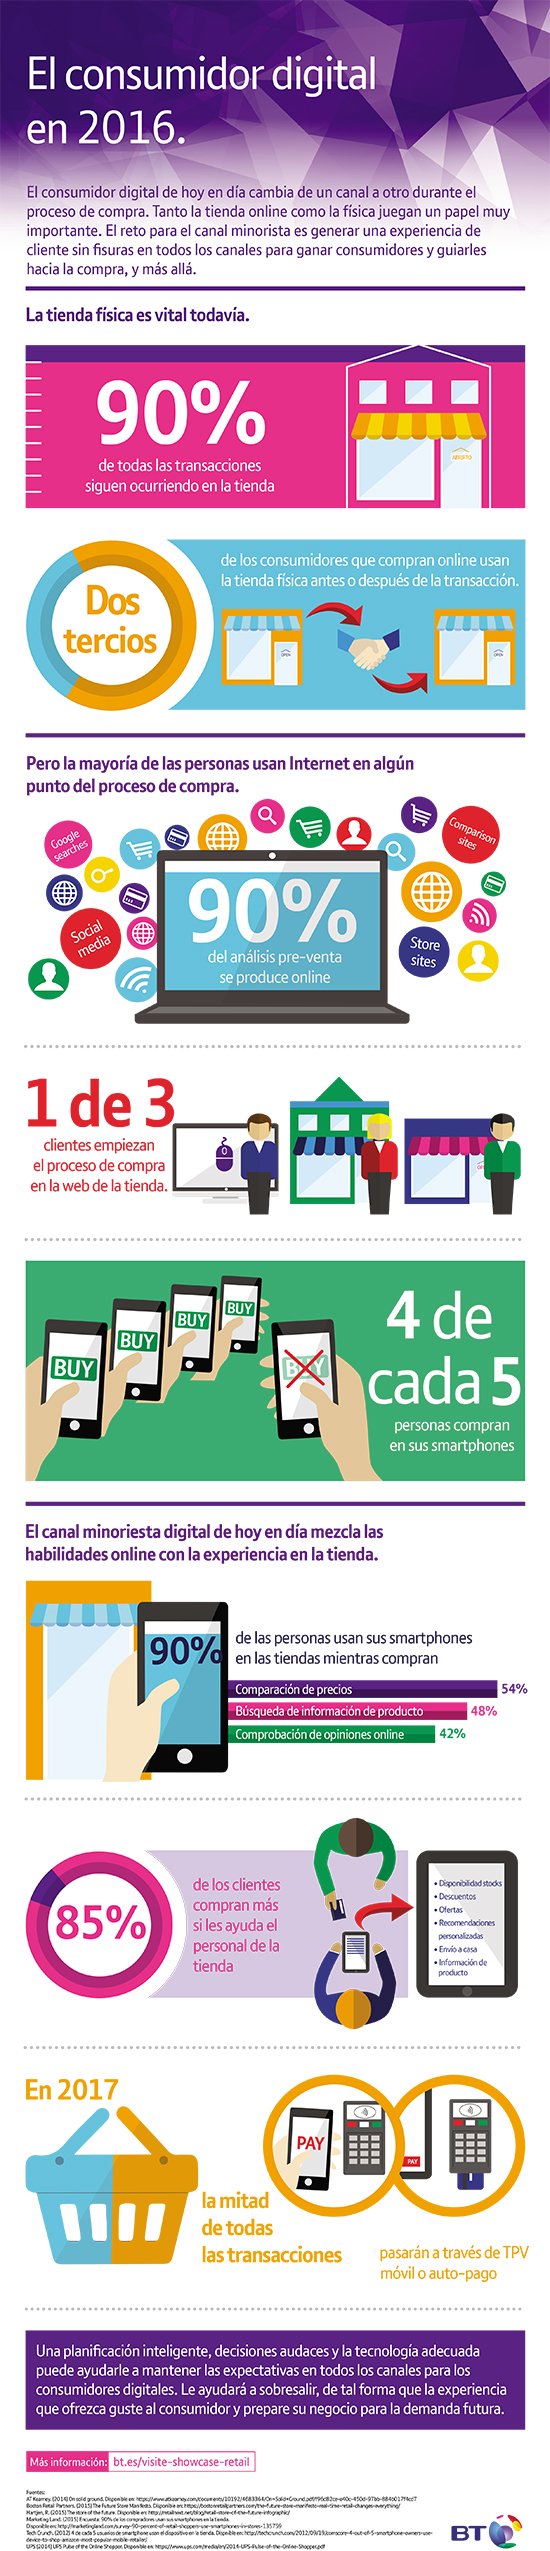 infografia_el-consumidor-digital-en-2016